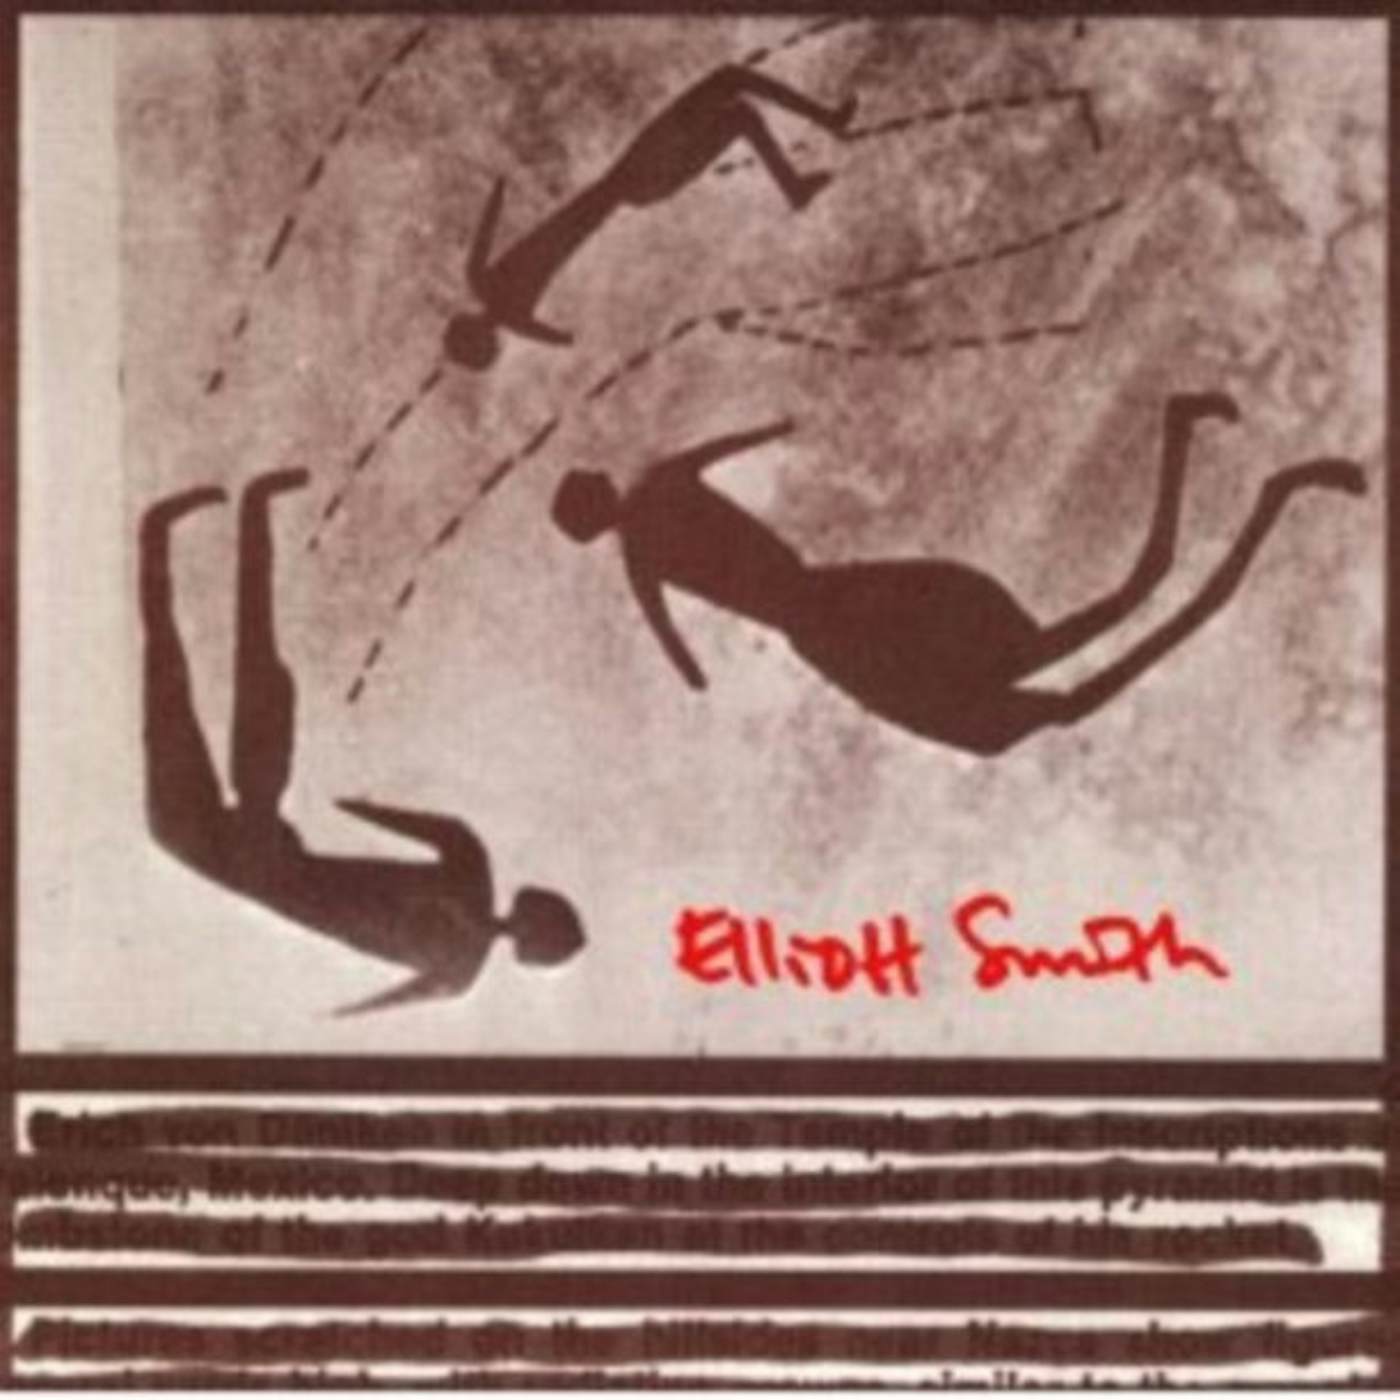 Elliott Smith Needle In The Hay Vinyl Record